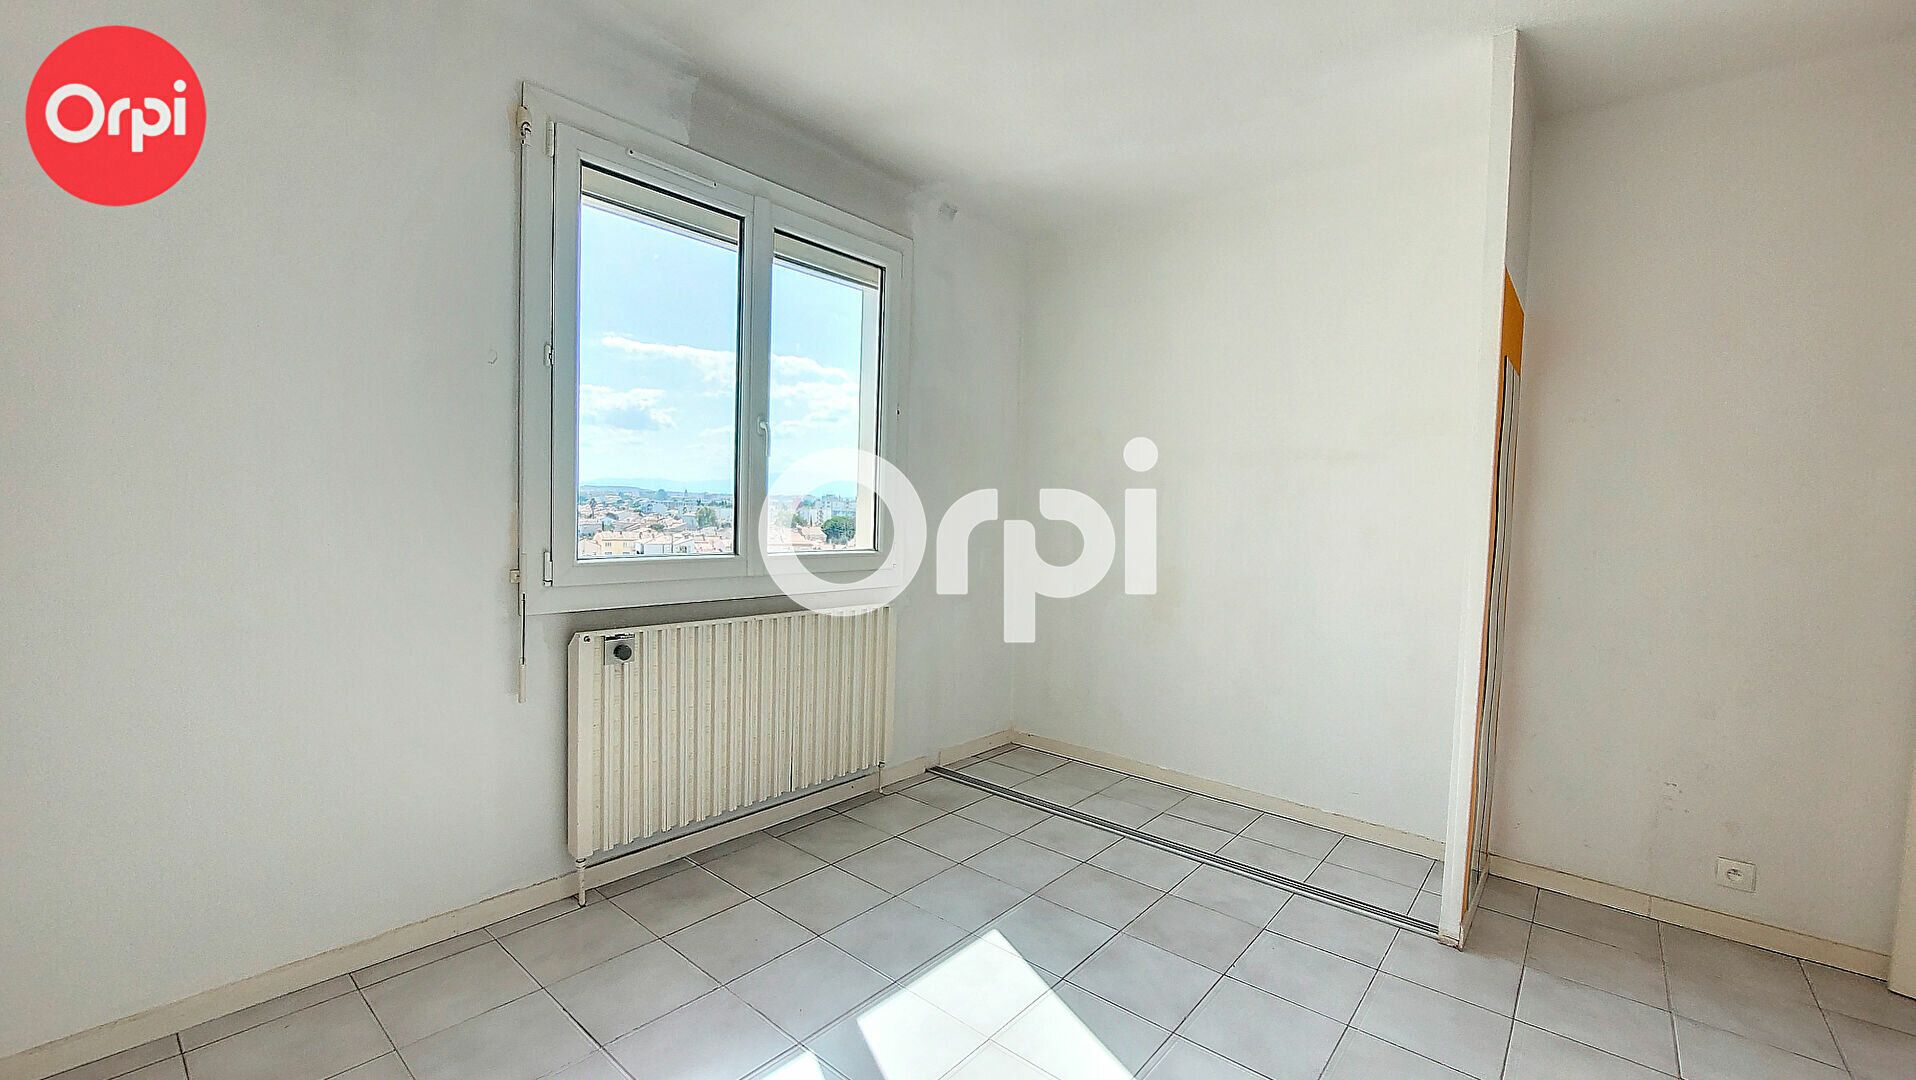 Appartement à vendre 4 74m2 à Perpignan vignette-7